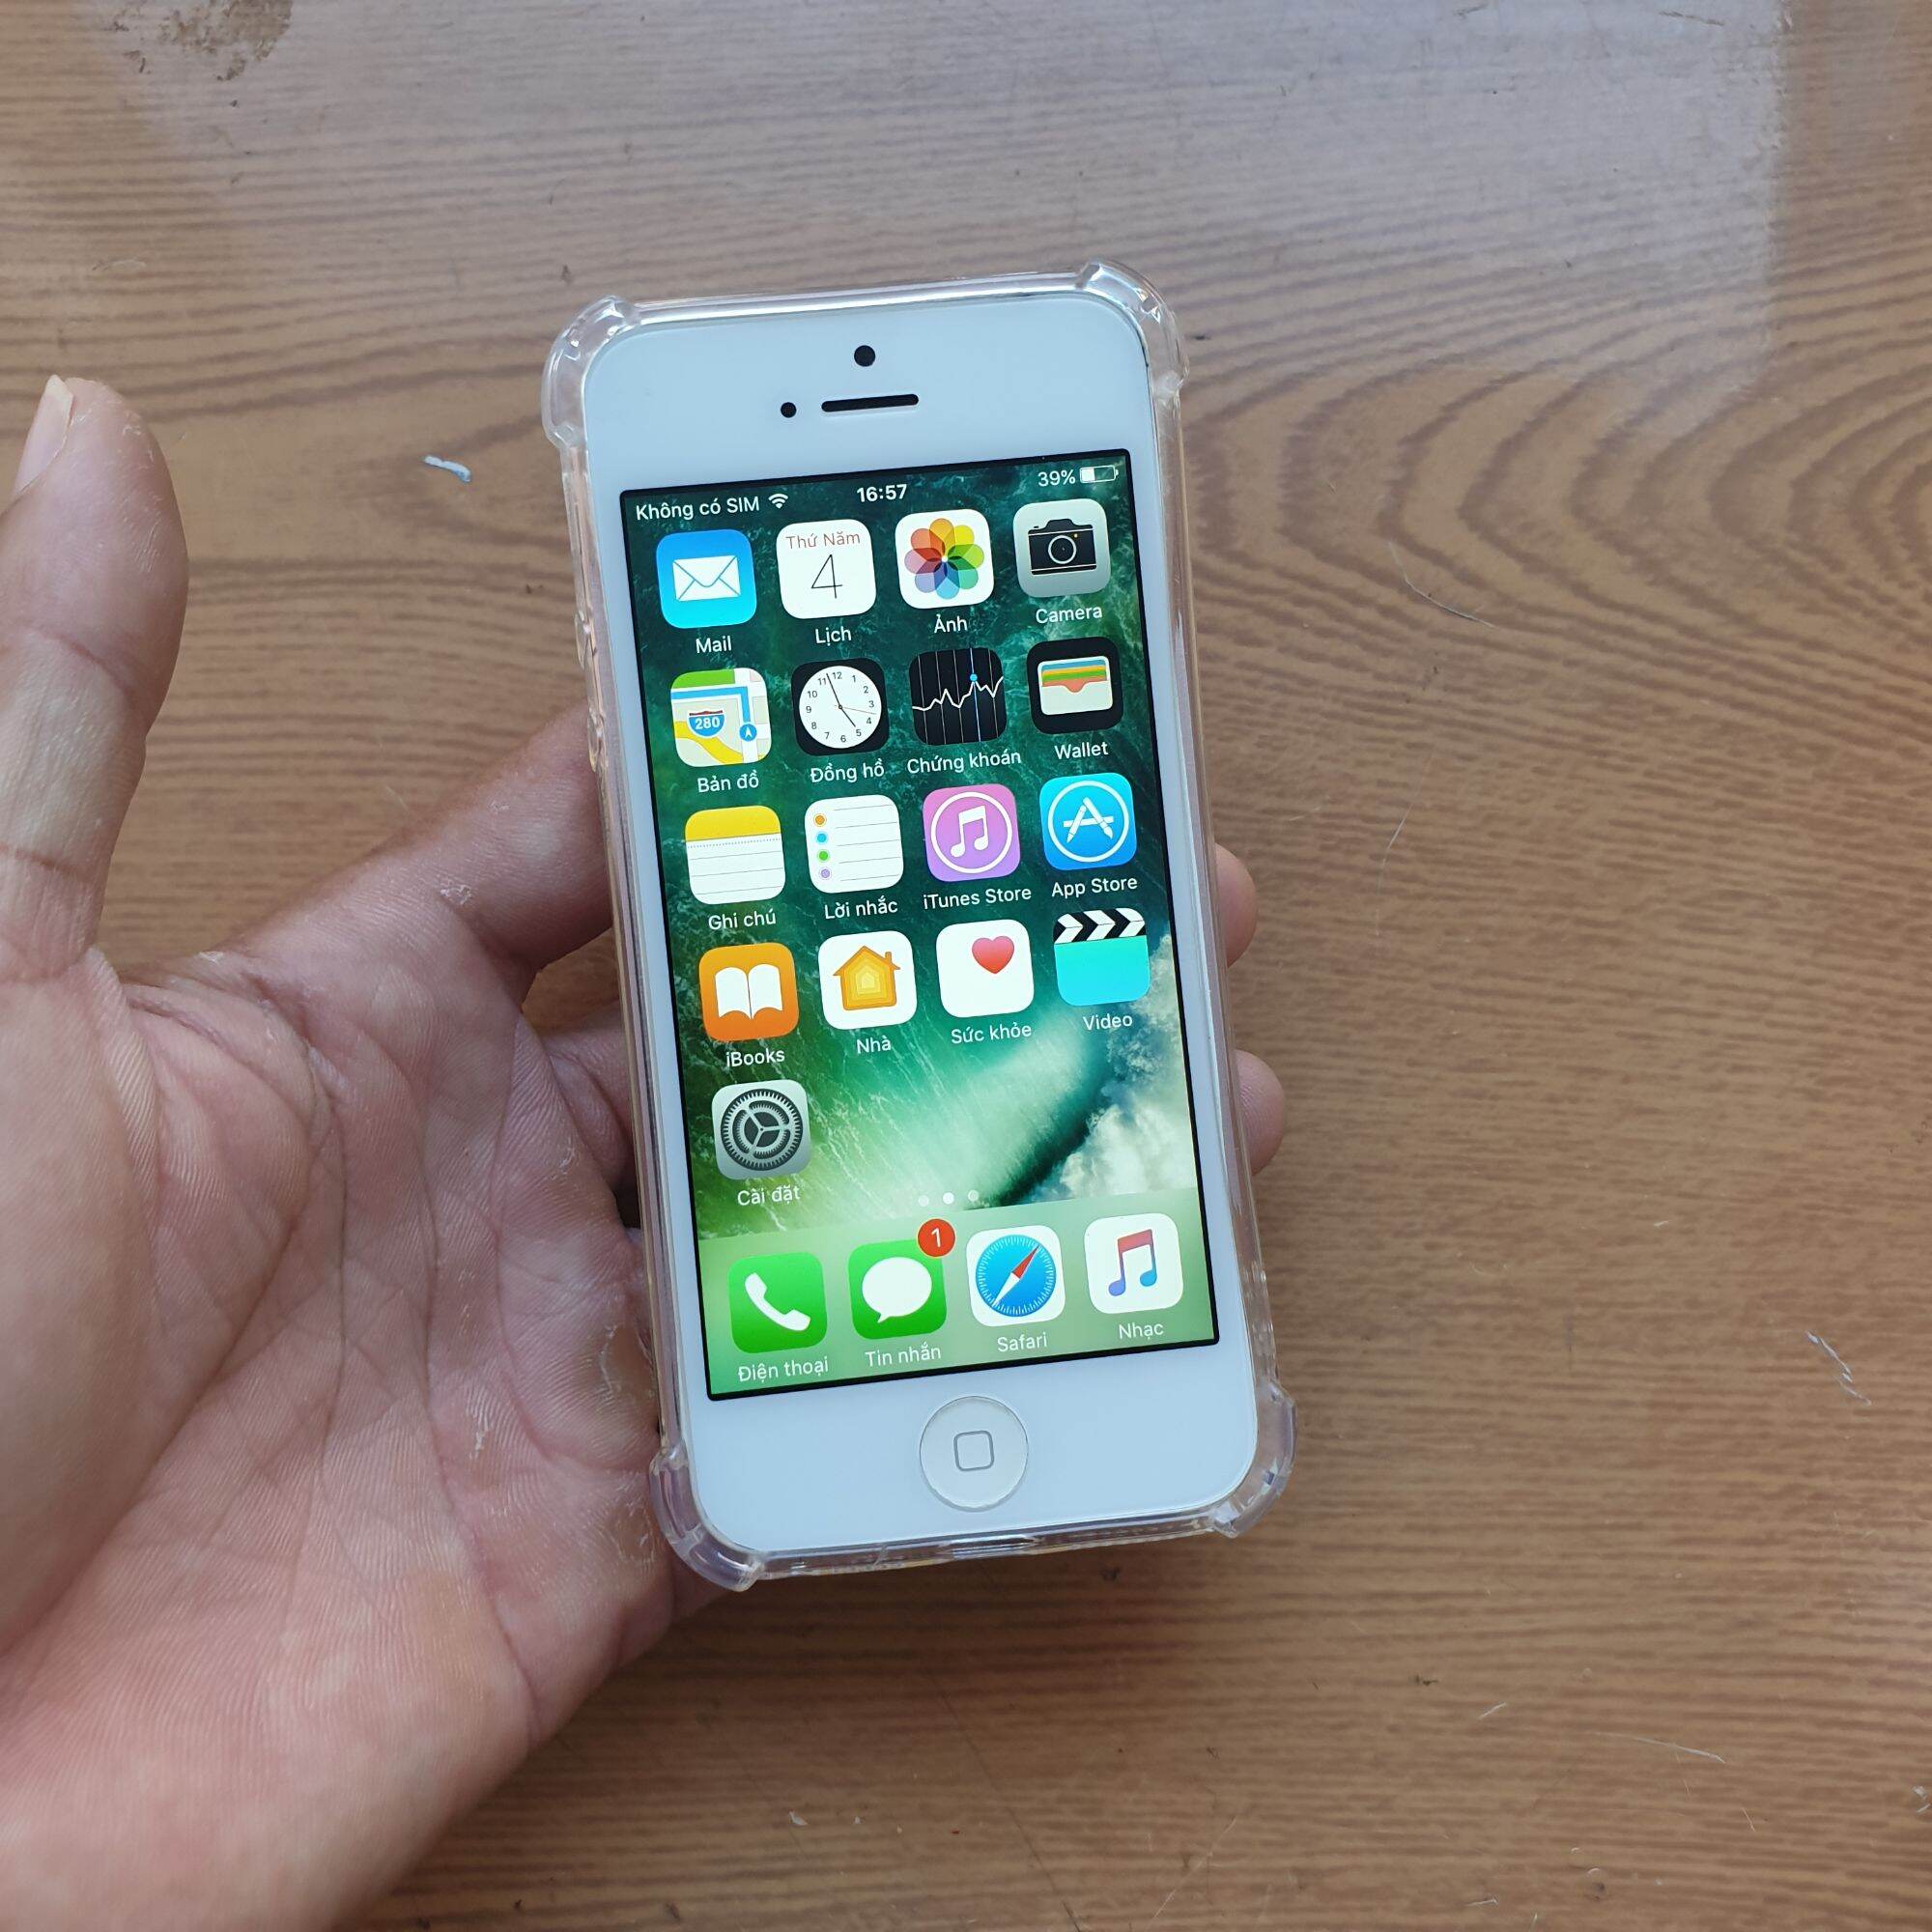 Hướng dẫn cách kiểm tra chi tiết iPhone 5, 5s, 6 cũ trước khi mua | Hướng  dẫn kỹ thuật